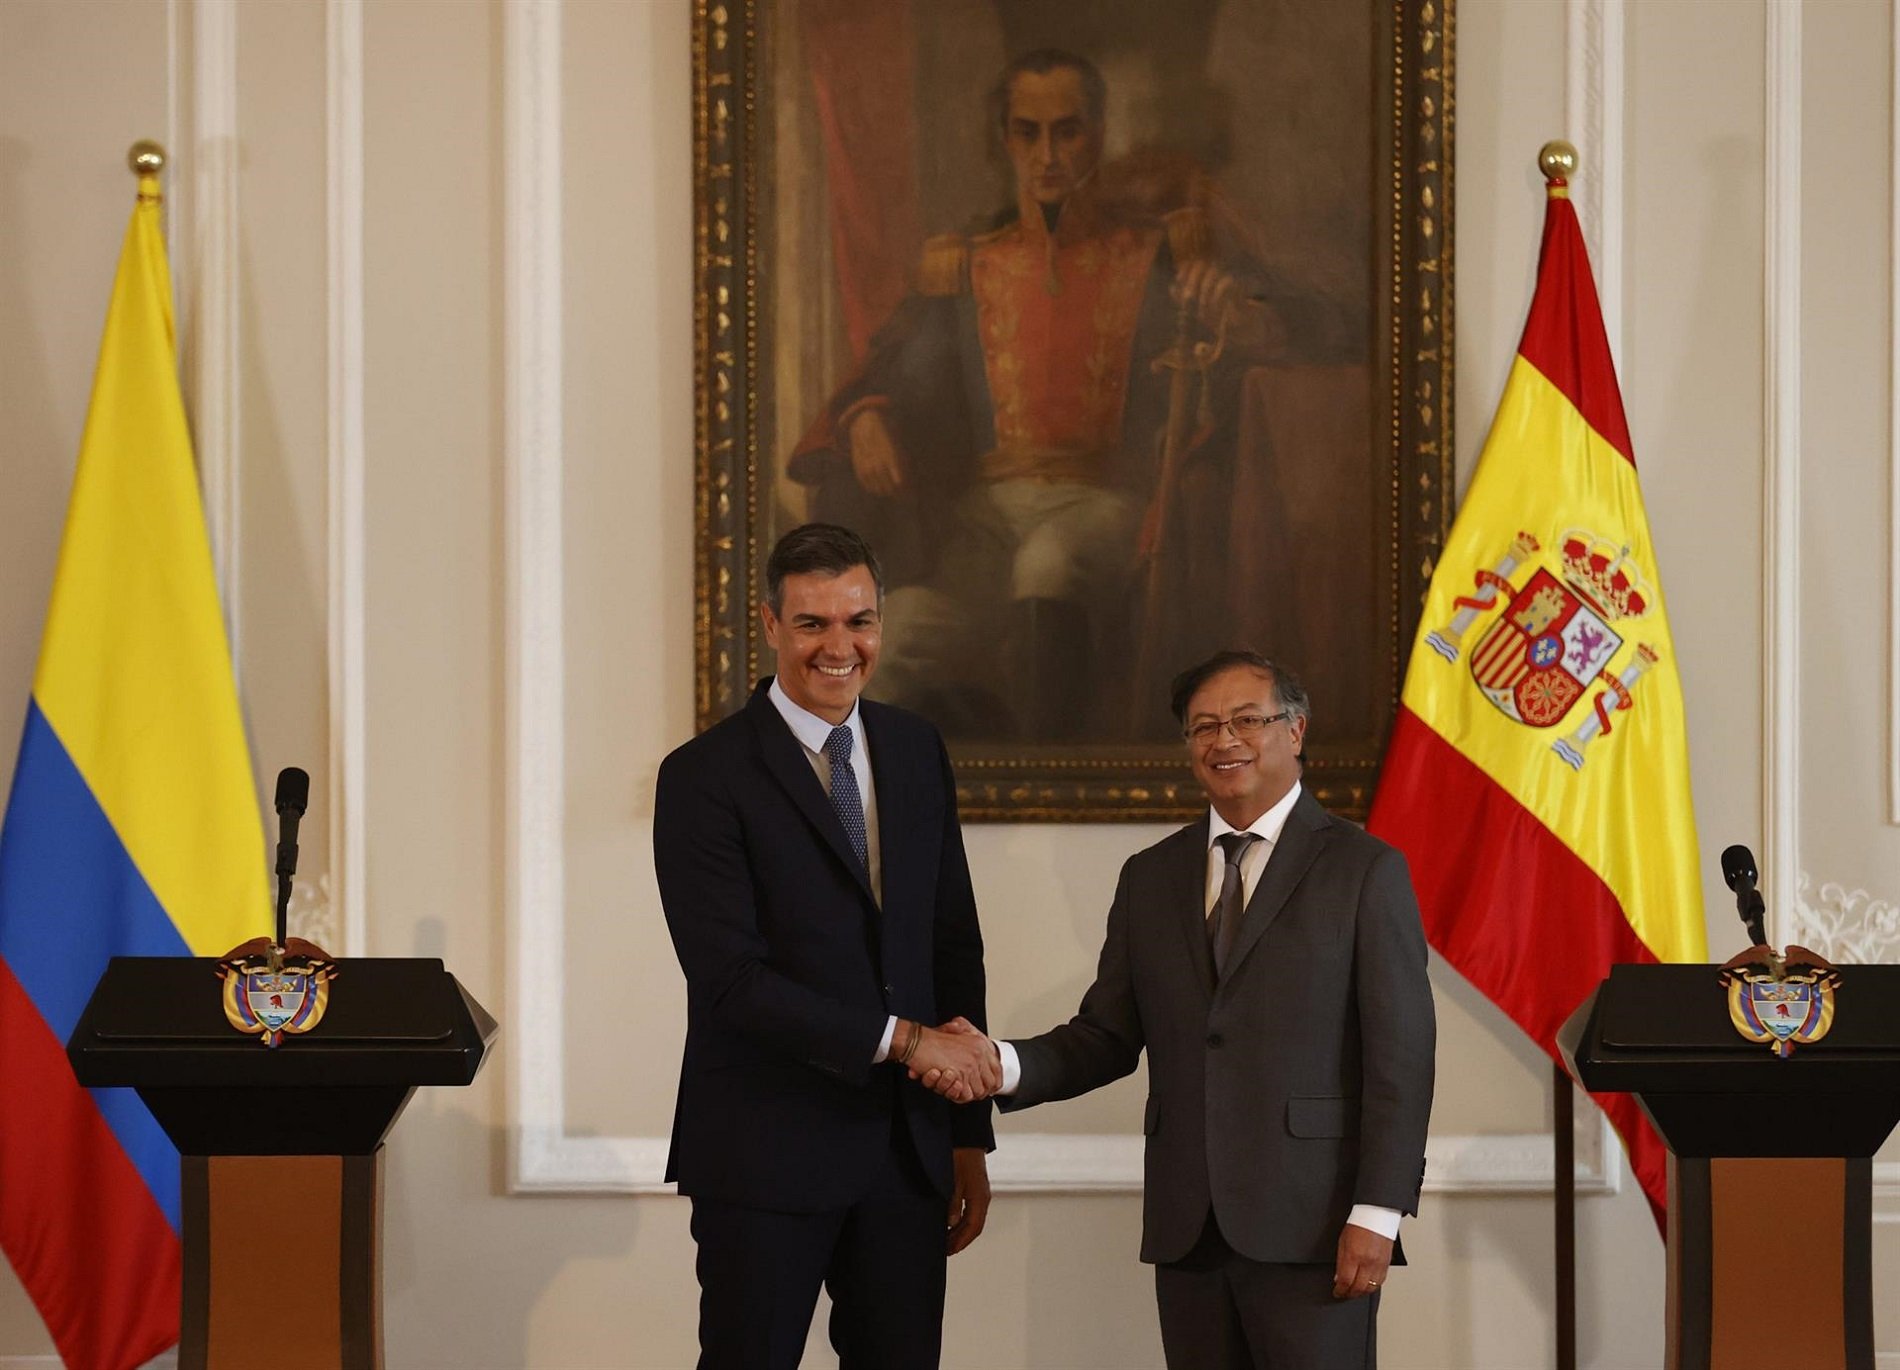 Pedro Sánchez, presentado en Colombia como "el presidente de la República de España"